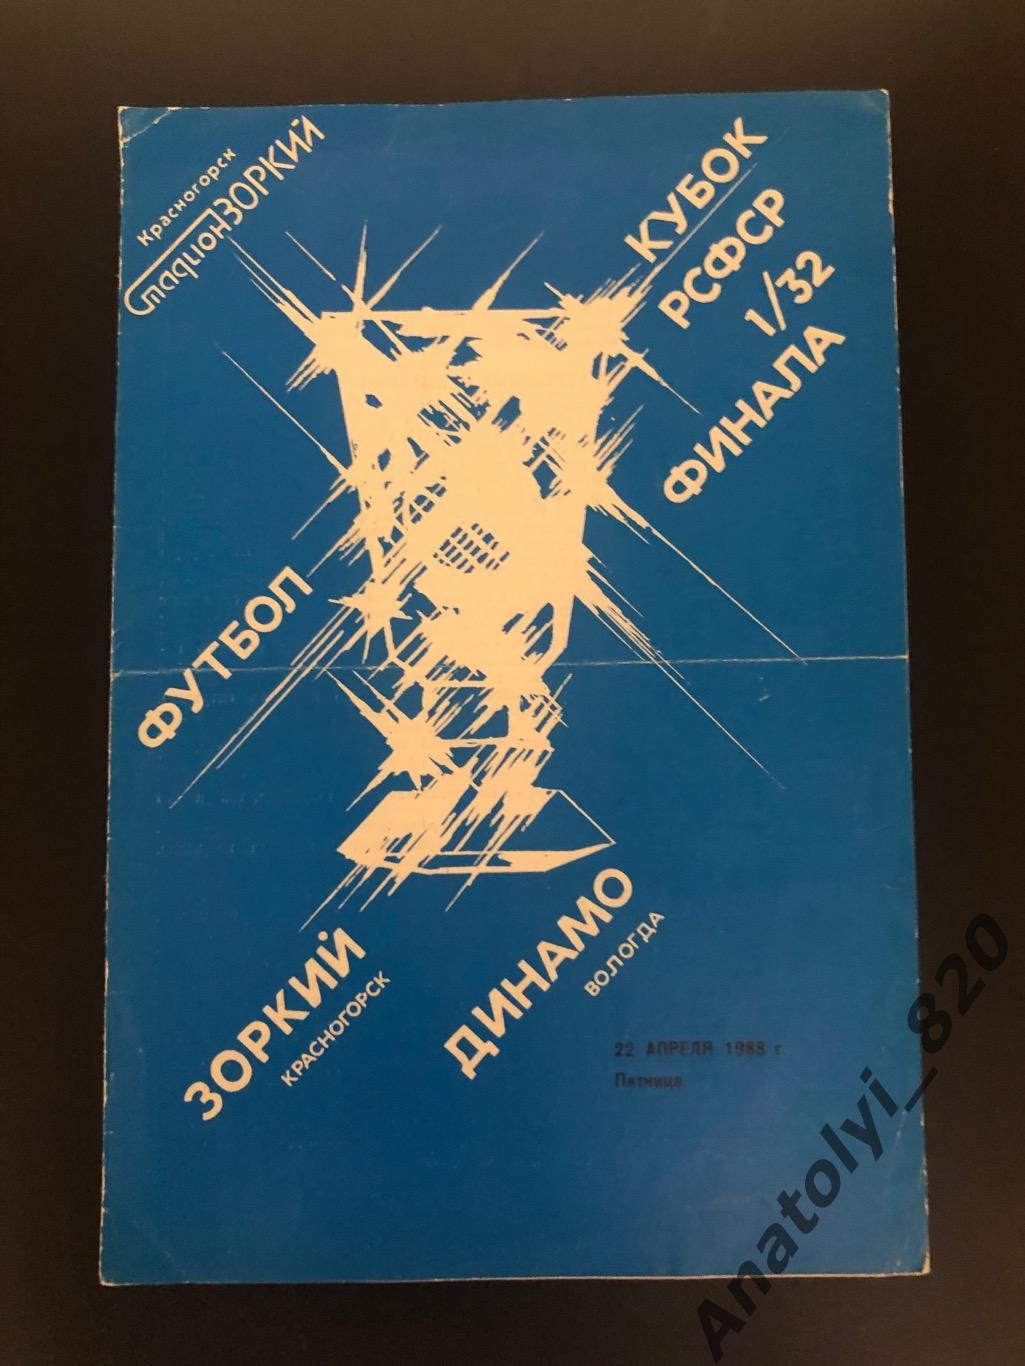 Зоркий Красногорск - Динамо Вологда, 22.04.1988